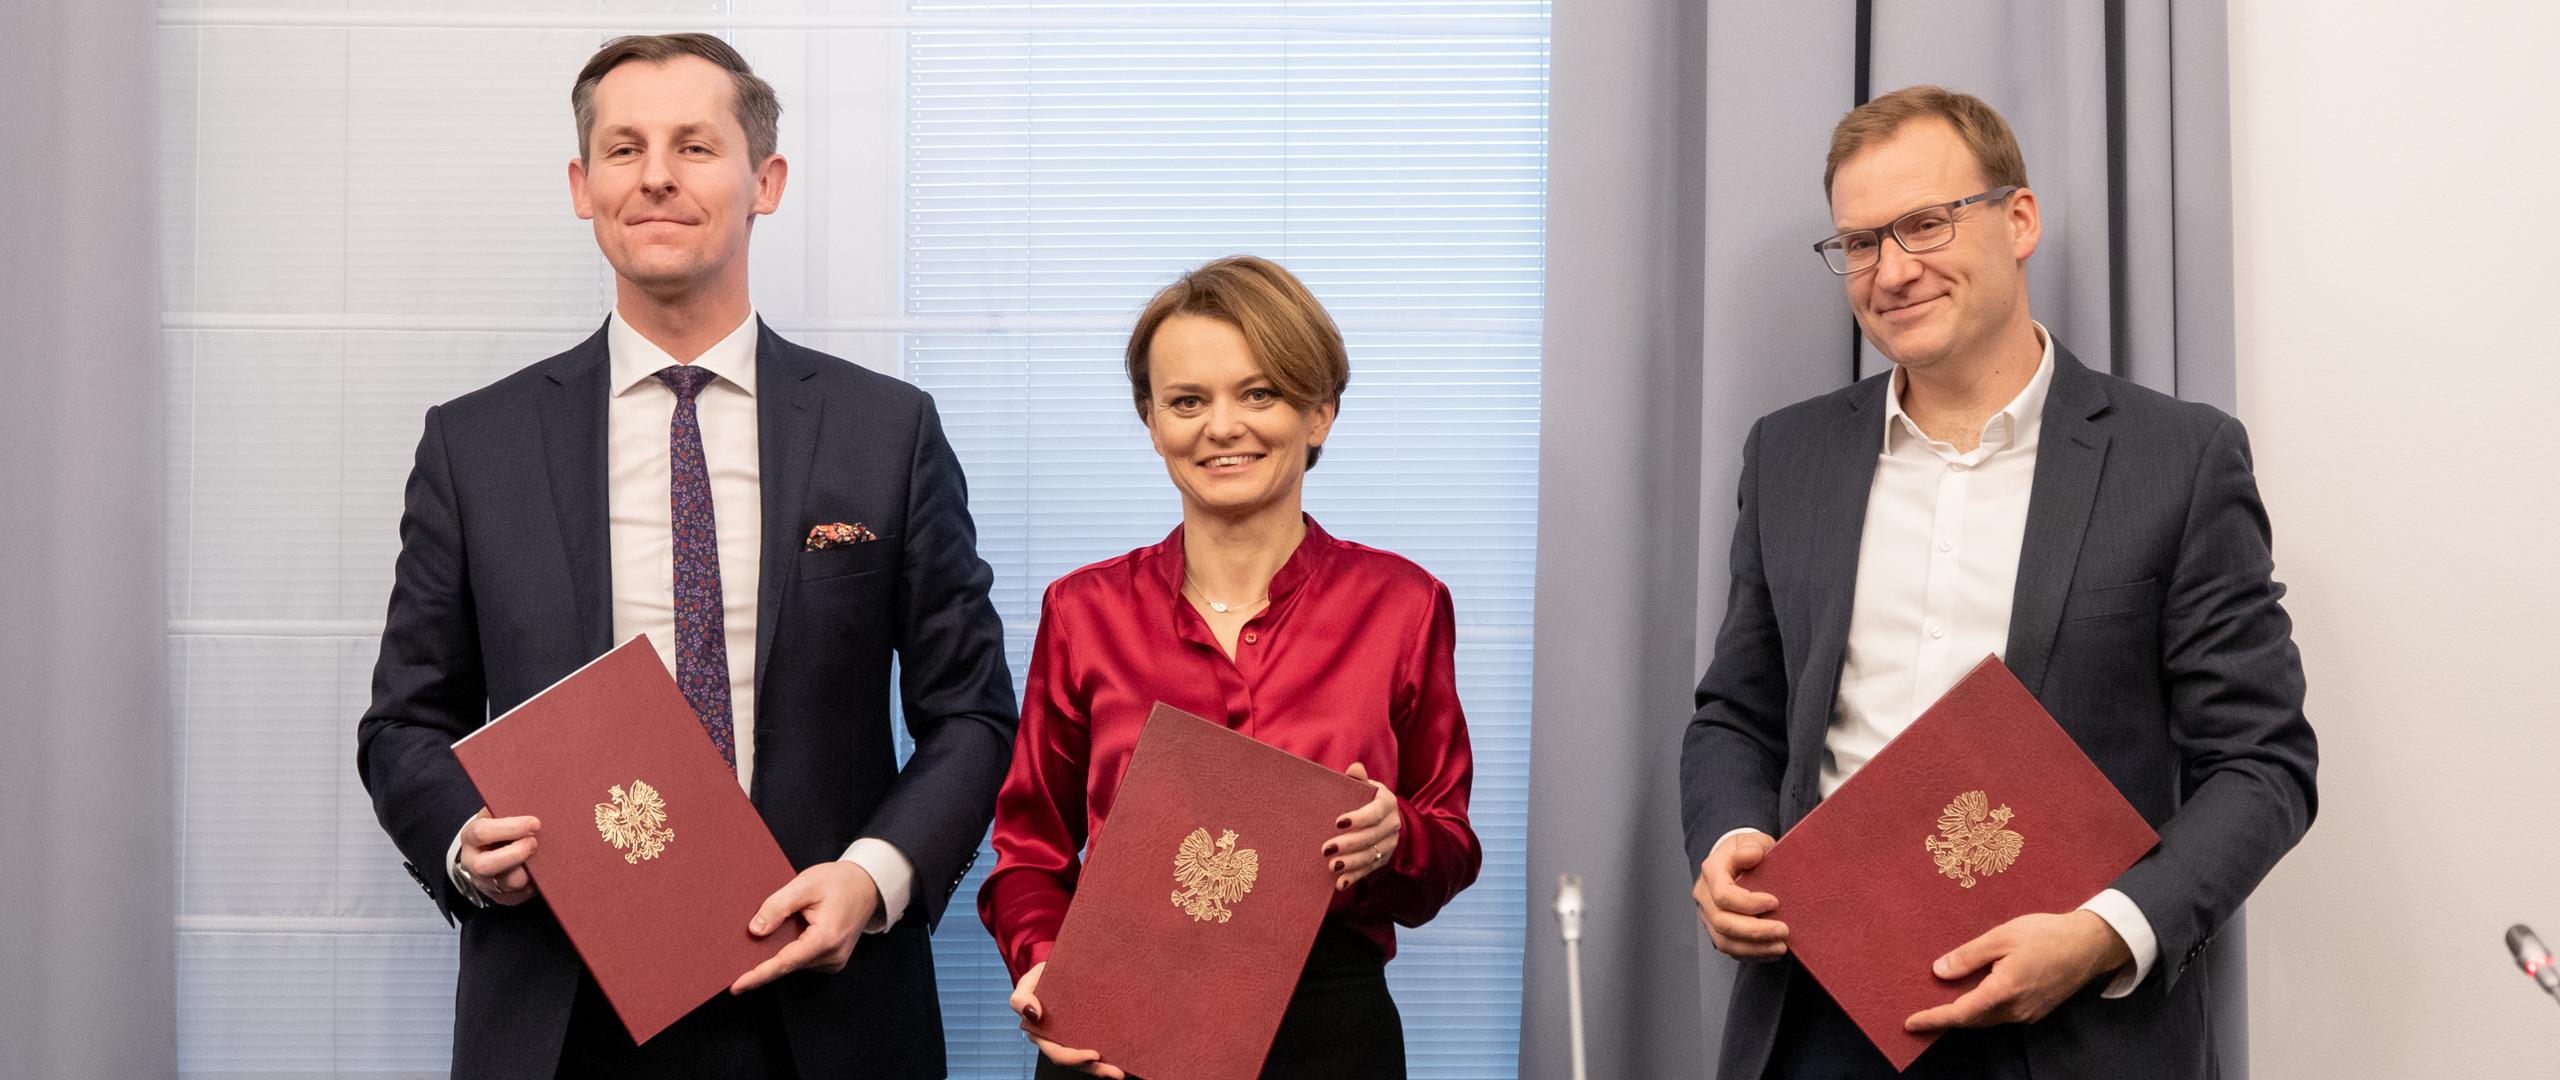 Od lewej stoją wiceprezes UOKiK, minister rozwoju, przedstawiciel Polskiego Alarmu Smogowego. W rekach trzymają teczki z podpisanych porozumieniem.